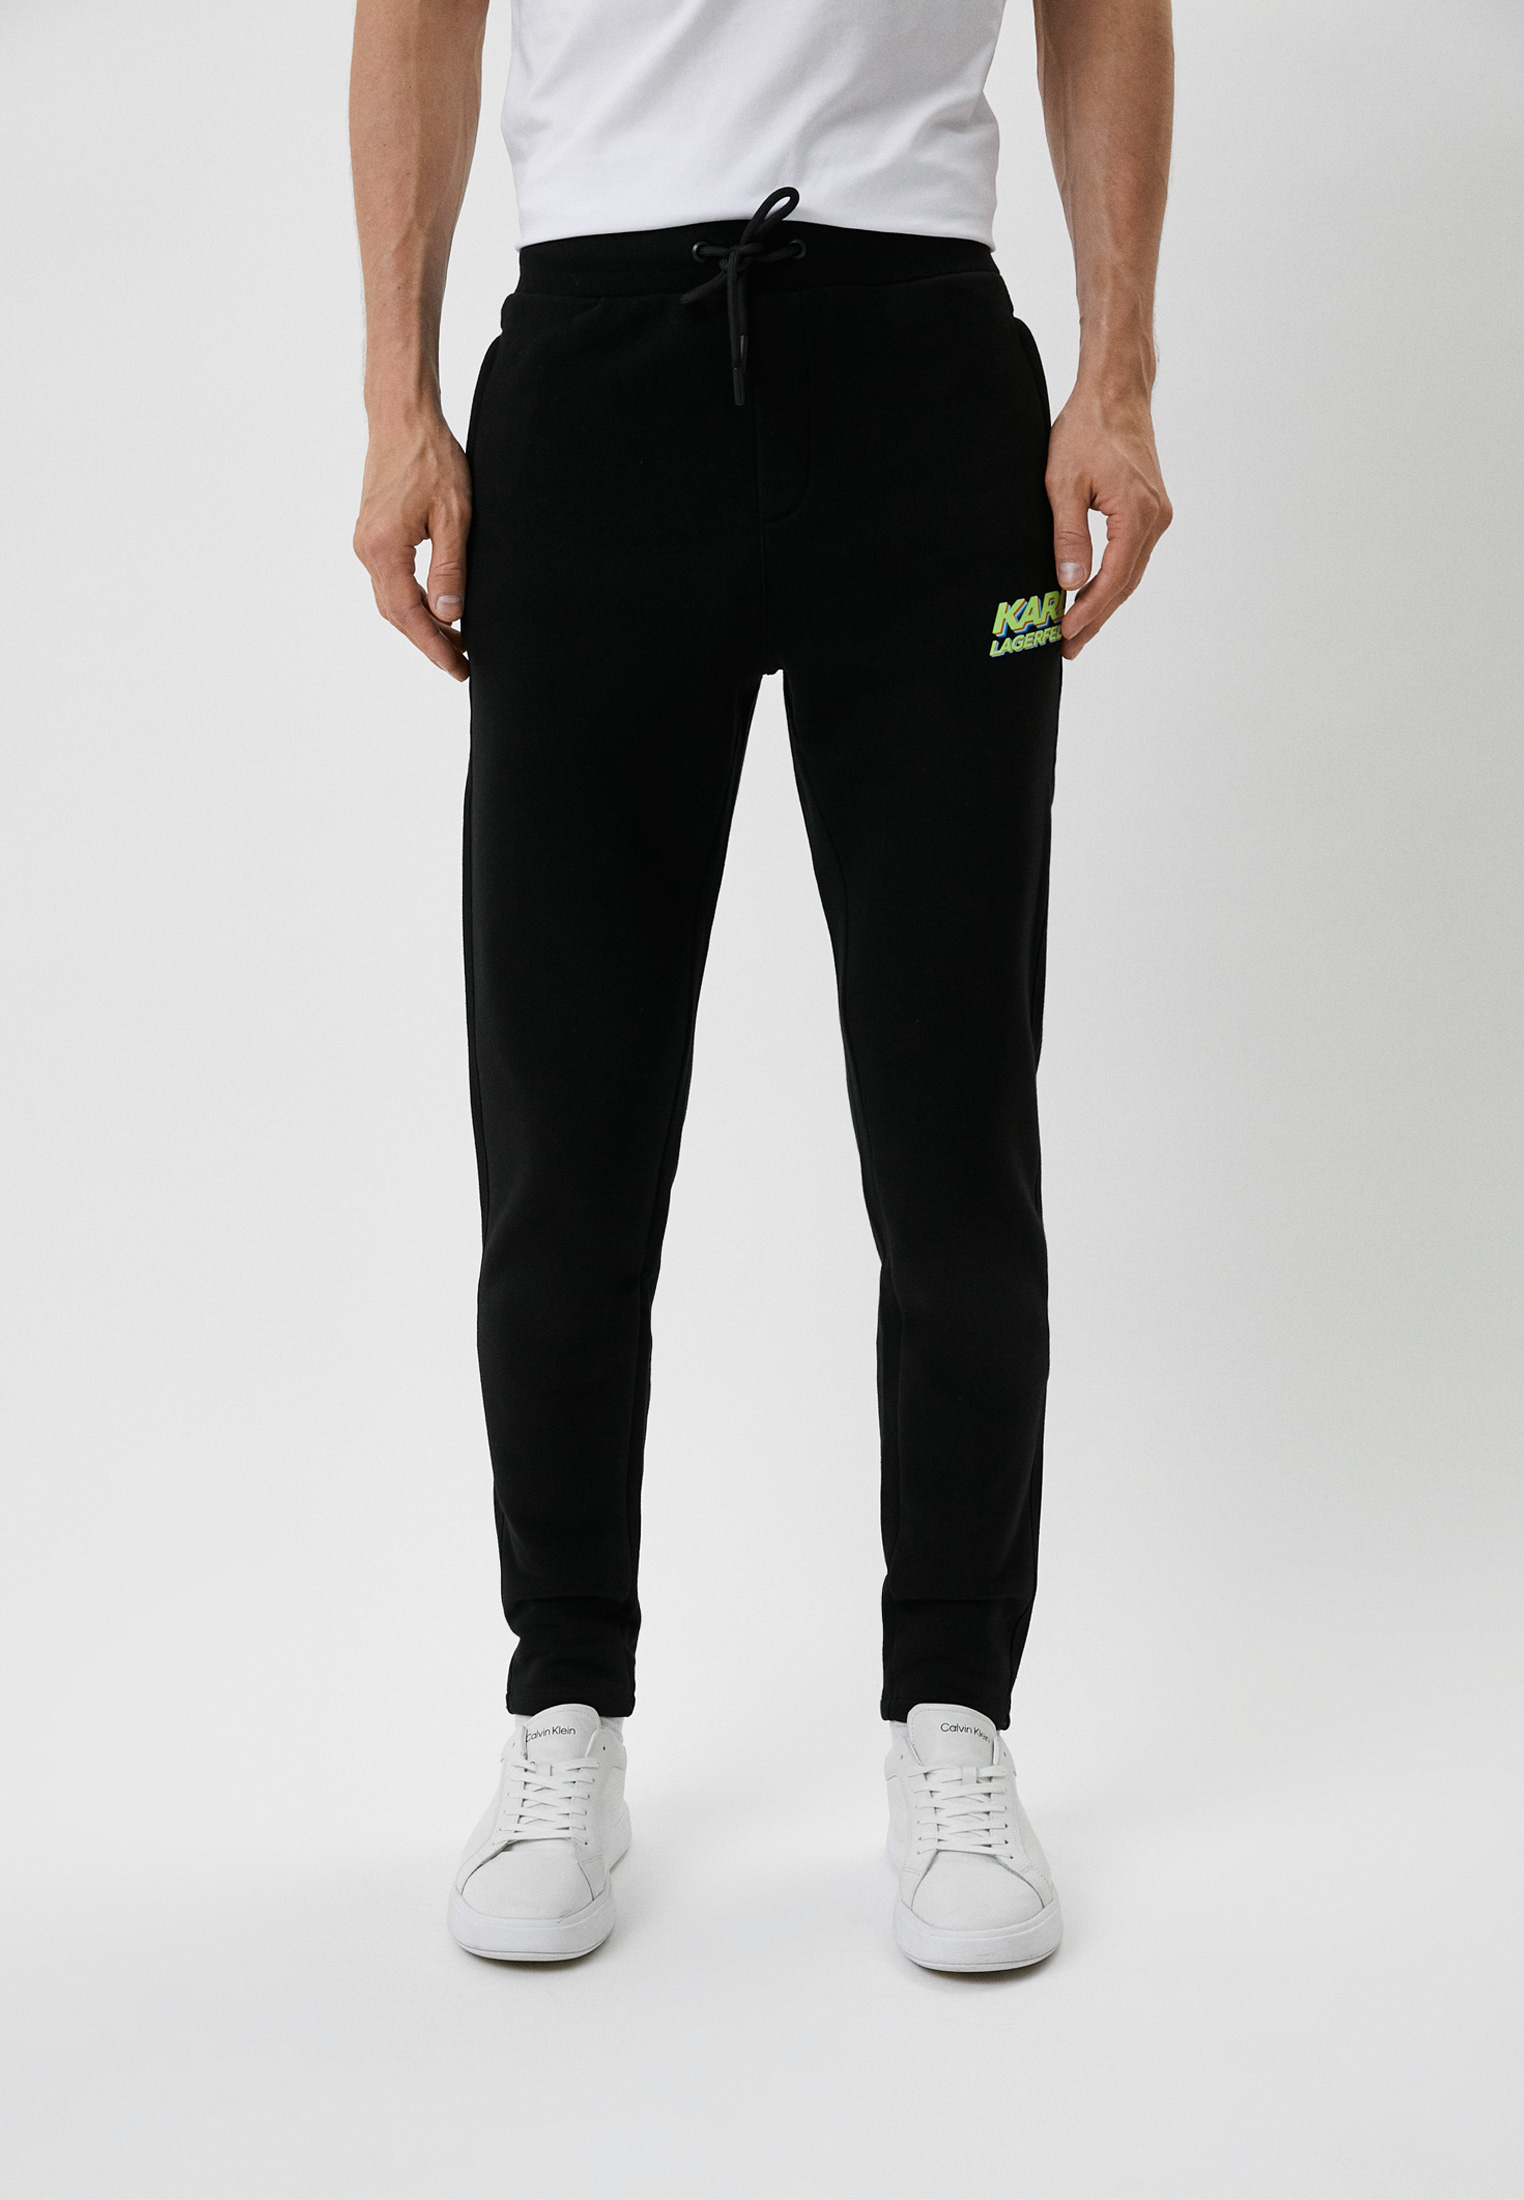 Мужские спортивные брюки Karl Lagerfeld 705081-523910